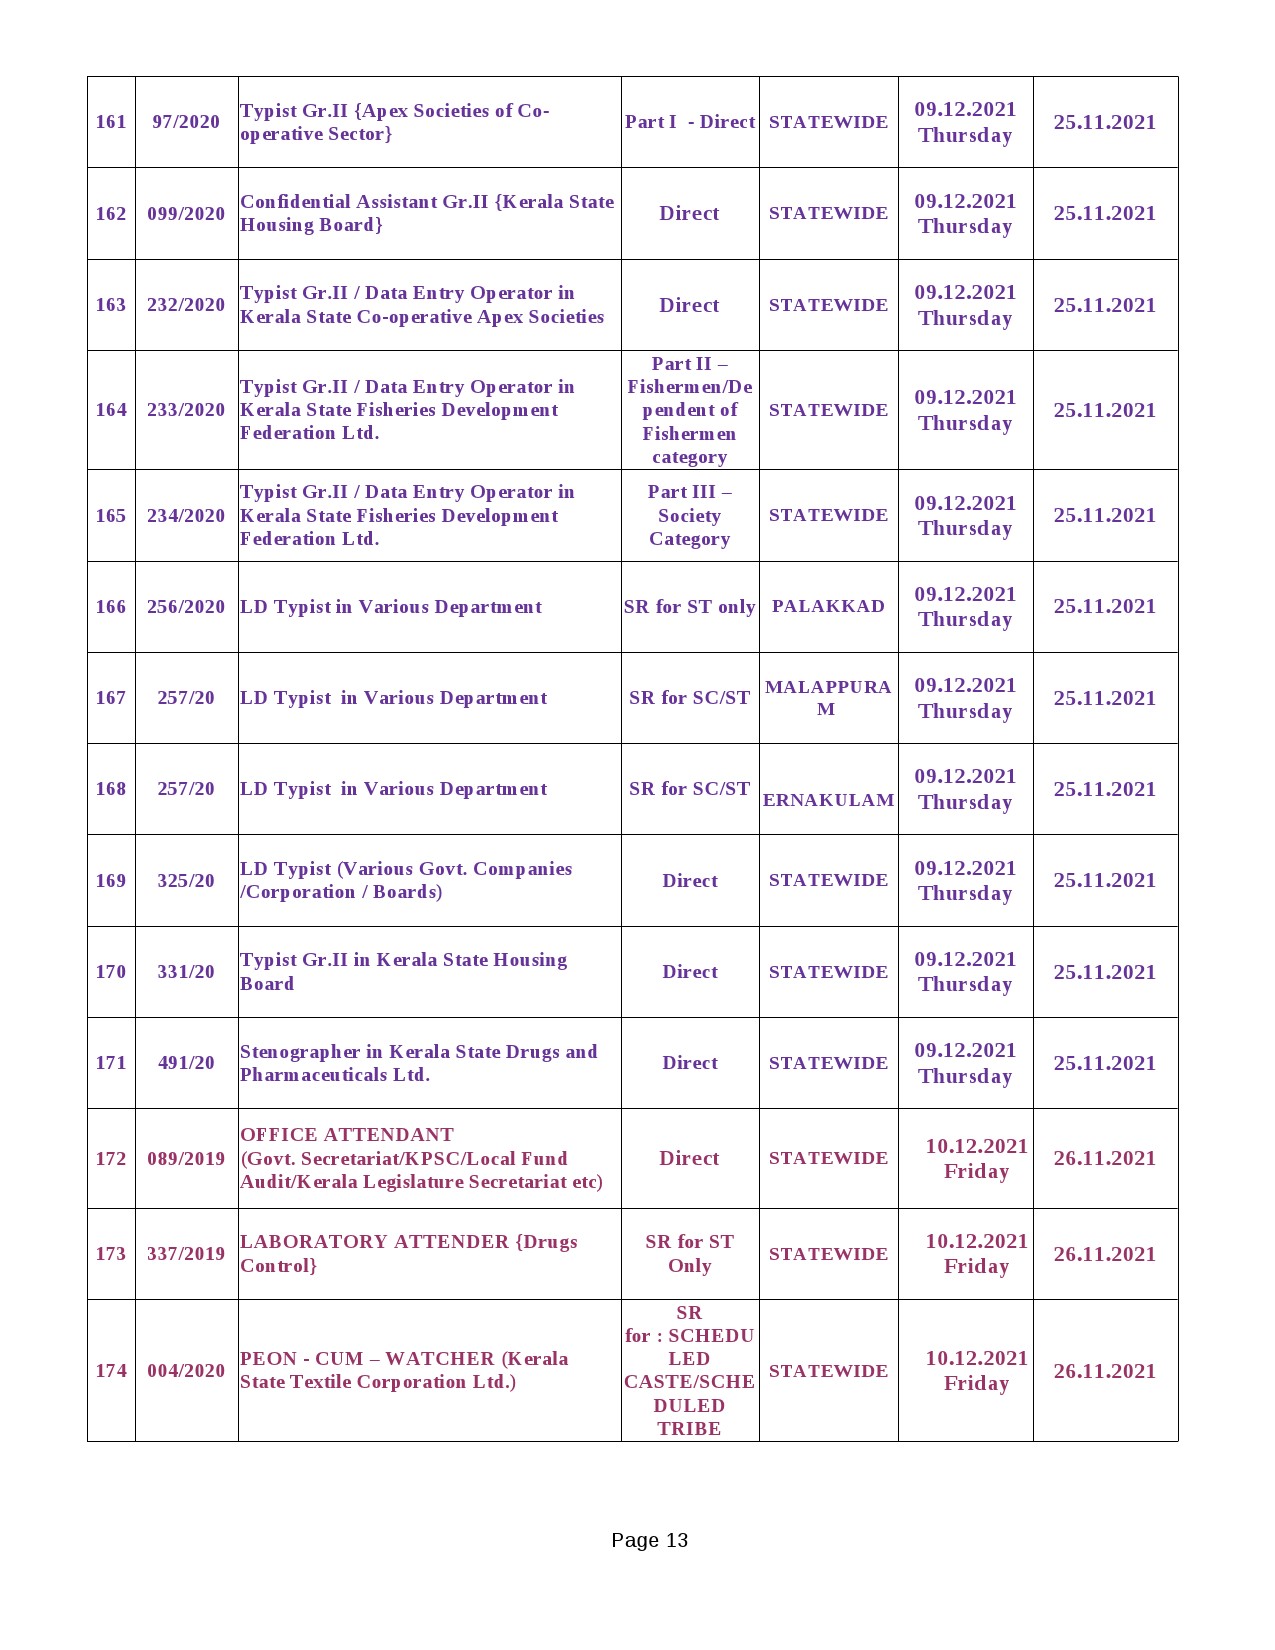 KPSC Exam Schedule Oct to Dec 2021 - Notification Image 13